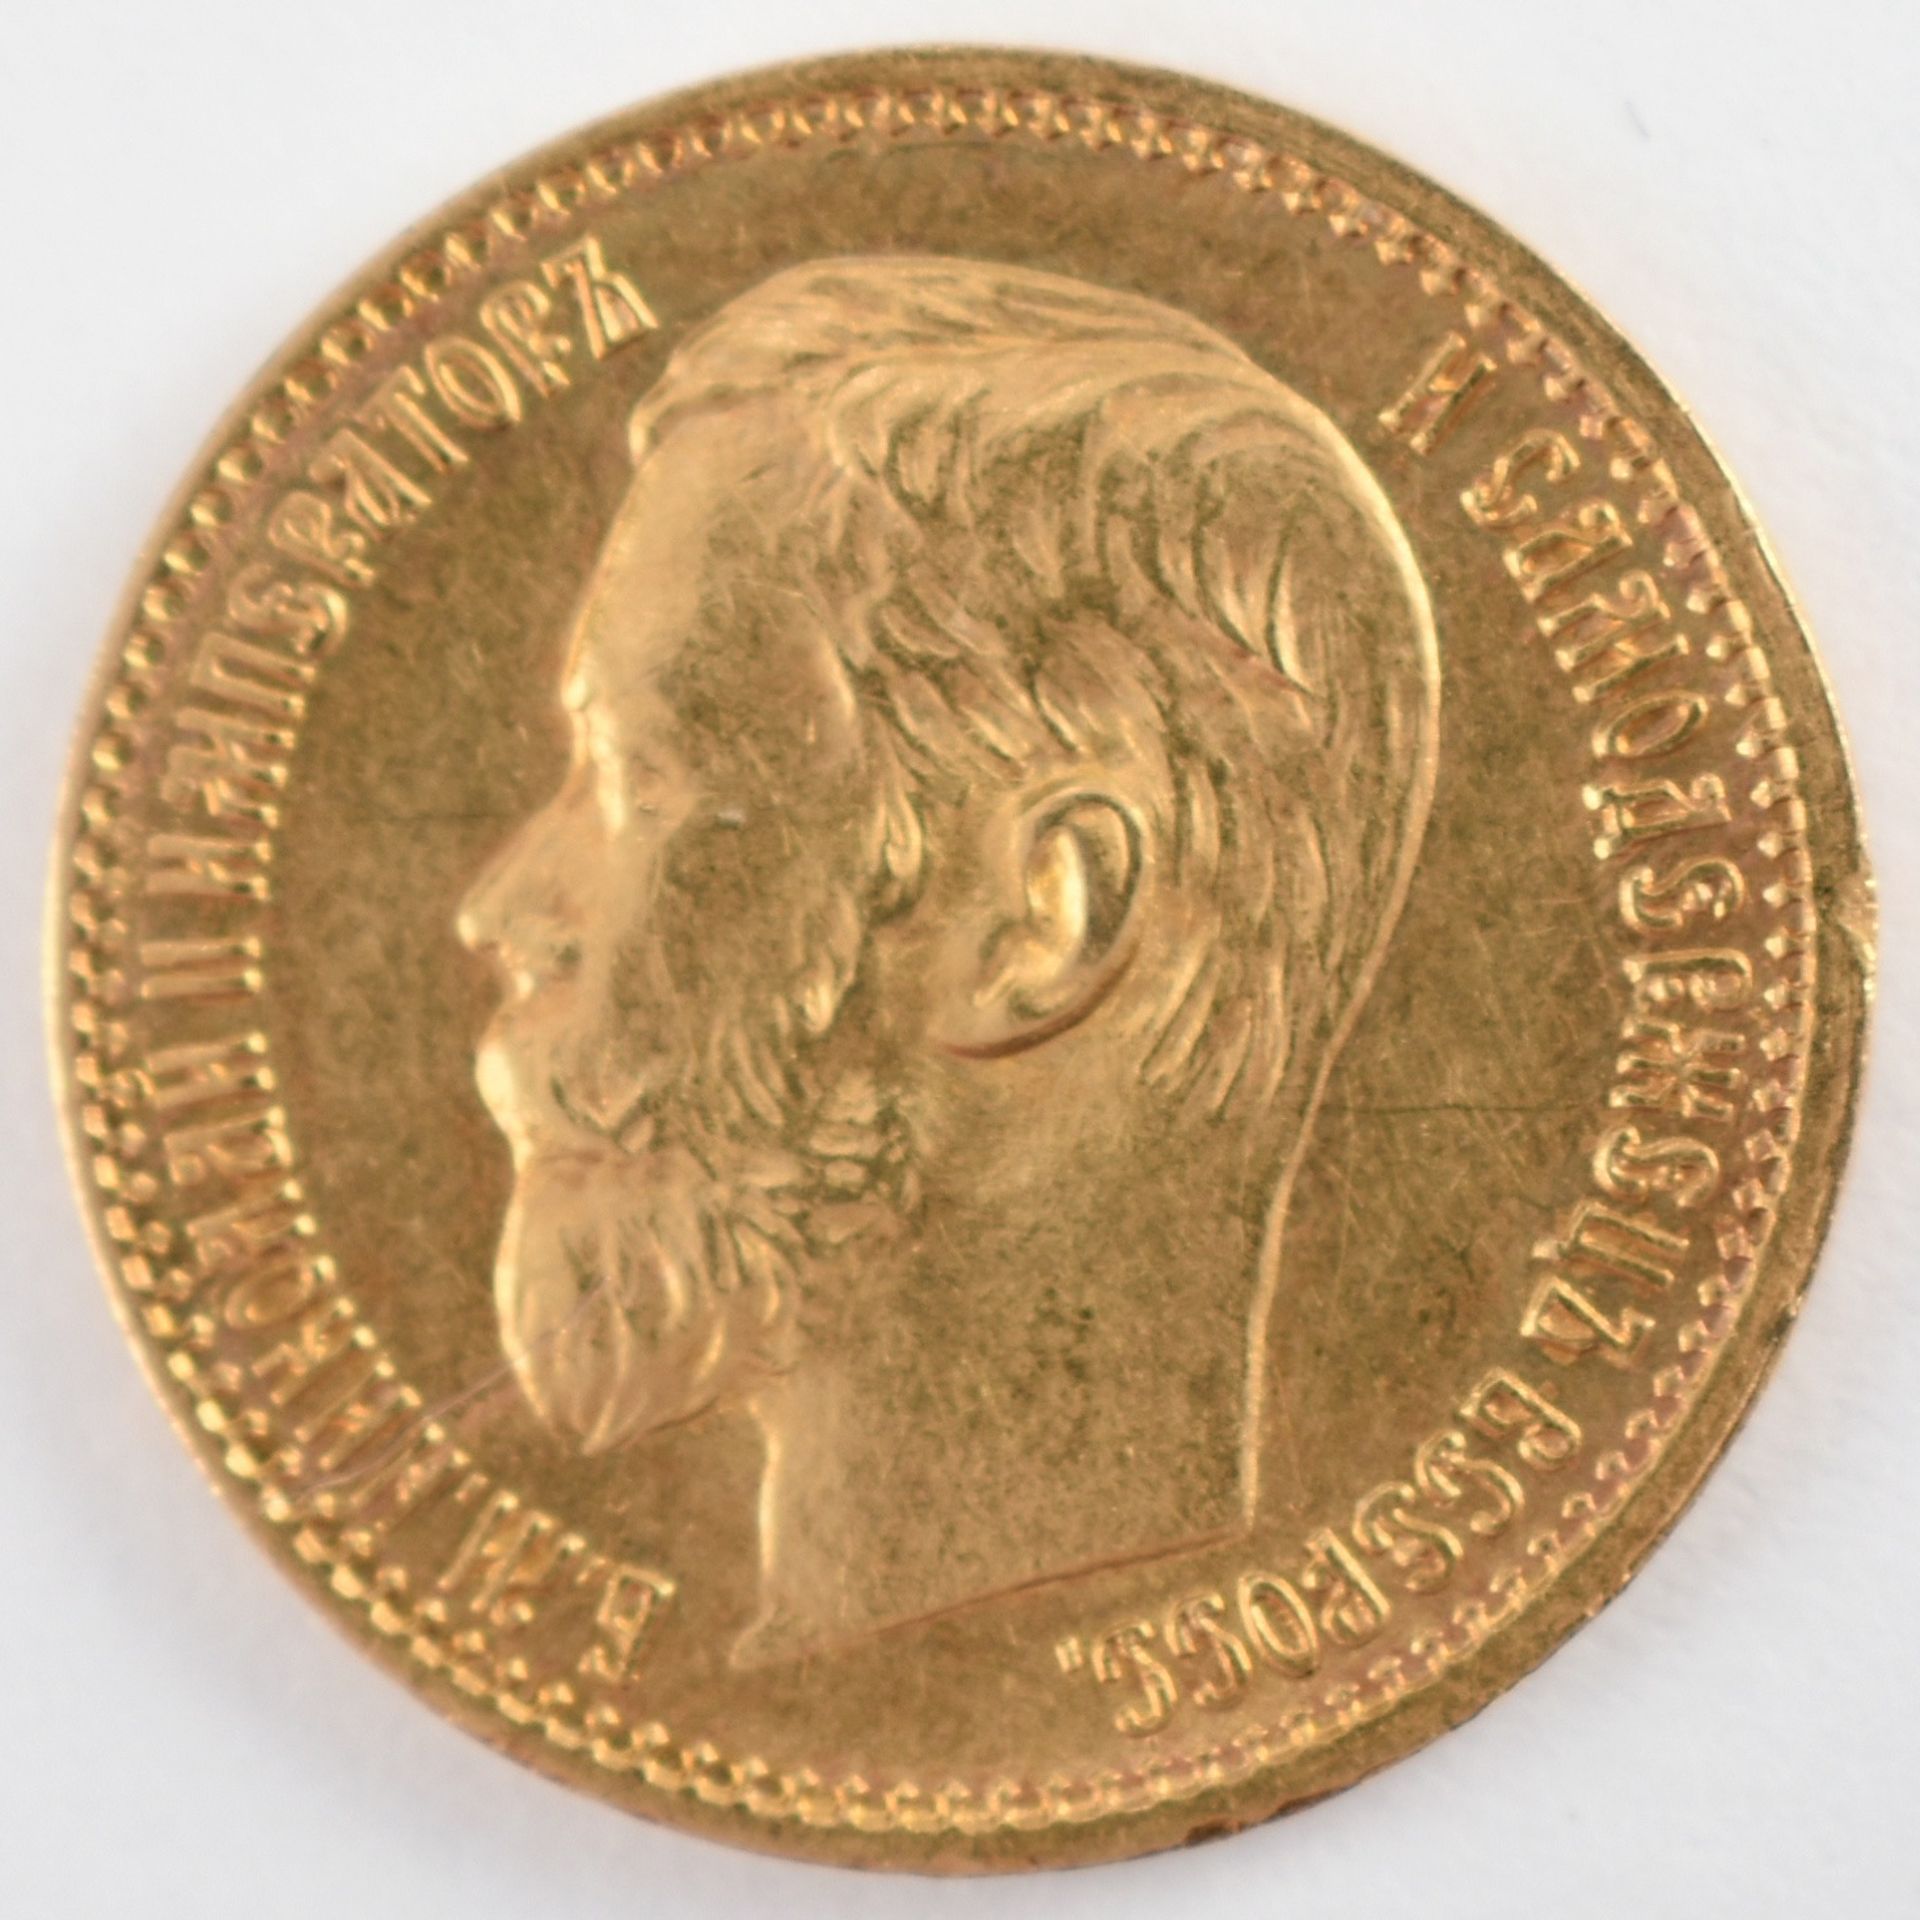 Goldmünze Russland Zarenzeit - 1898 5 Rubel in Gold, 900/1000, 4,3 g, D ca. 18 mm, av. Zar - Bild 2 aus 3